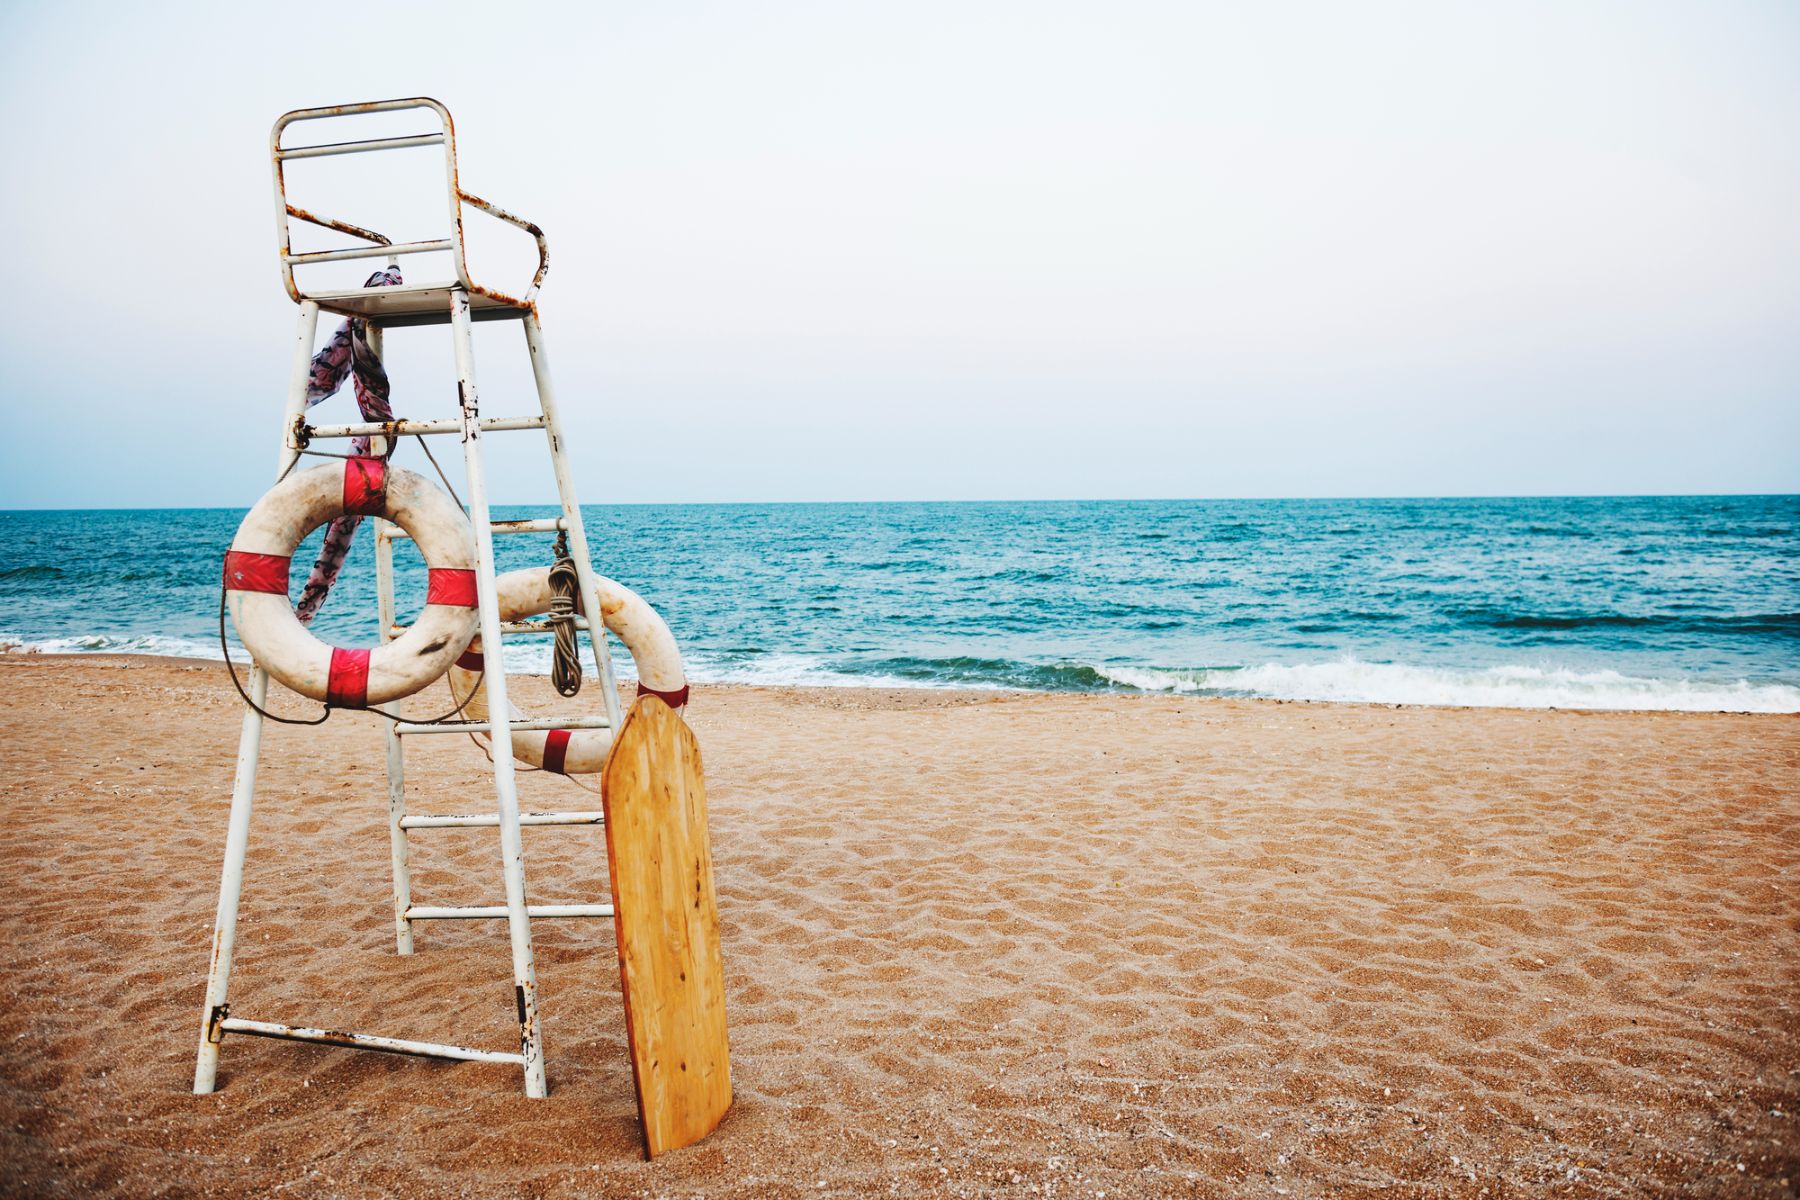 Lifeguard chair at a beach